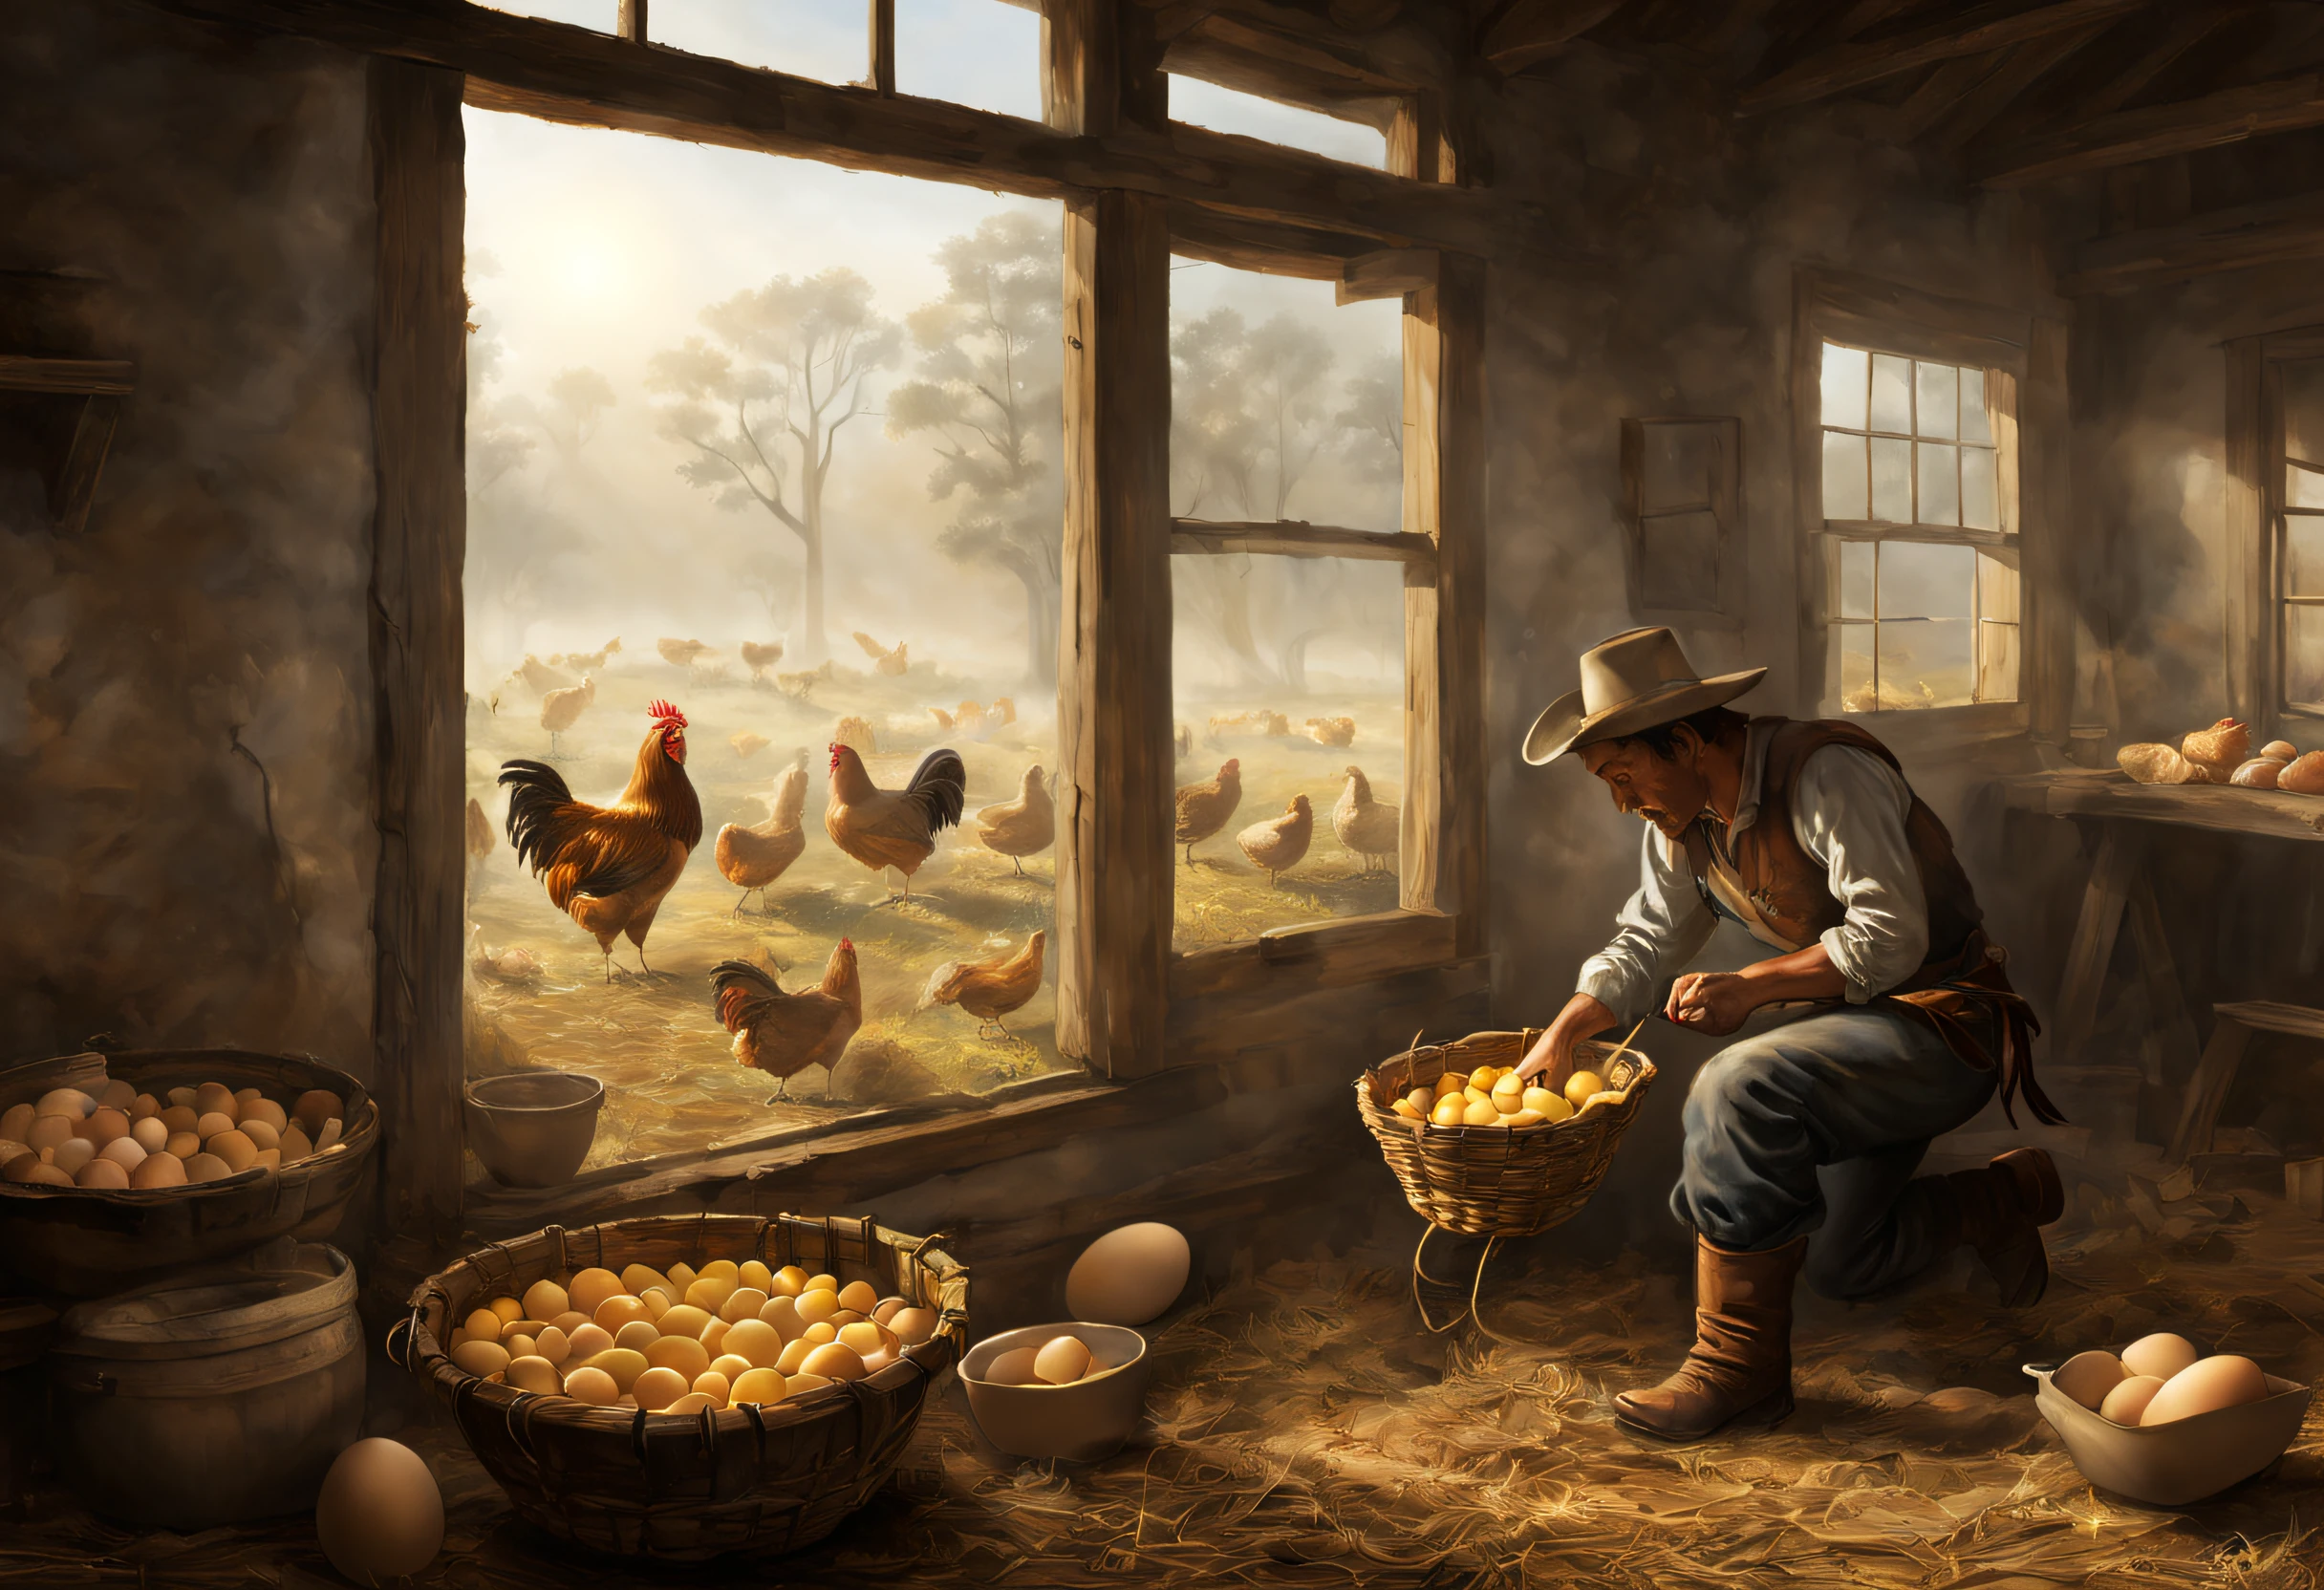 La vie à la ferme, ouest sauvage, Cowboy récoltant 10 œufs de poule, lumière qui brille à travers une petite fenêtre, voyant de volume:1.3, brouillard, (dessus de la table), (Meilleure qualité), (ultra détaillé)